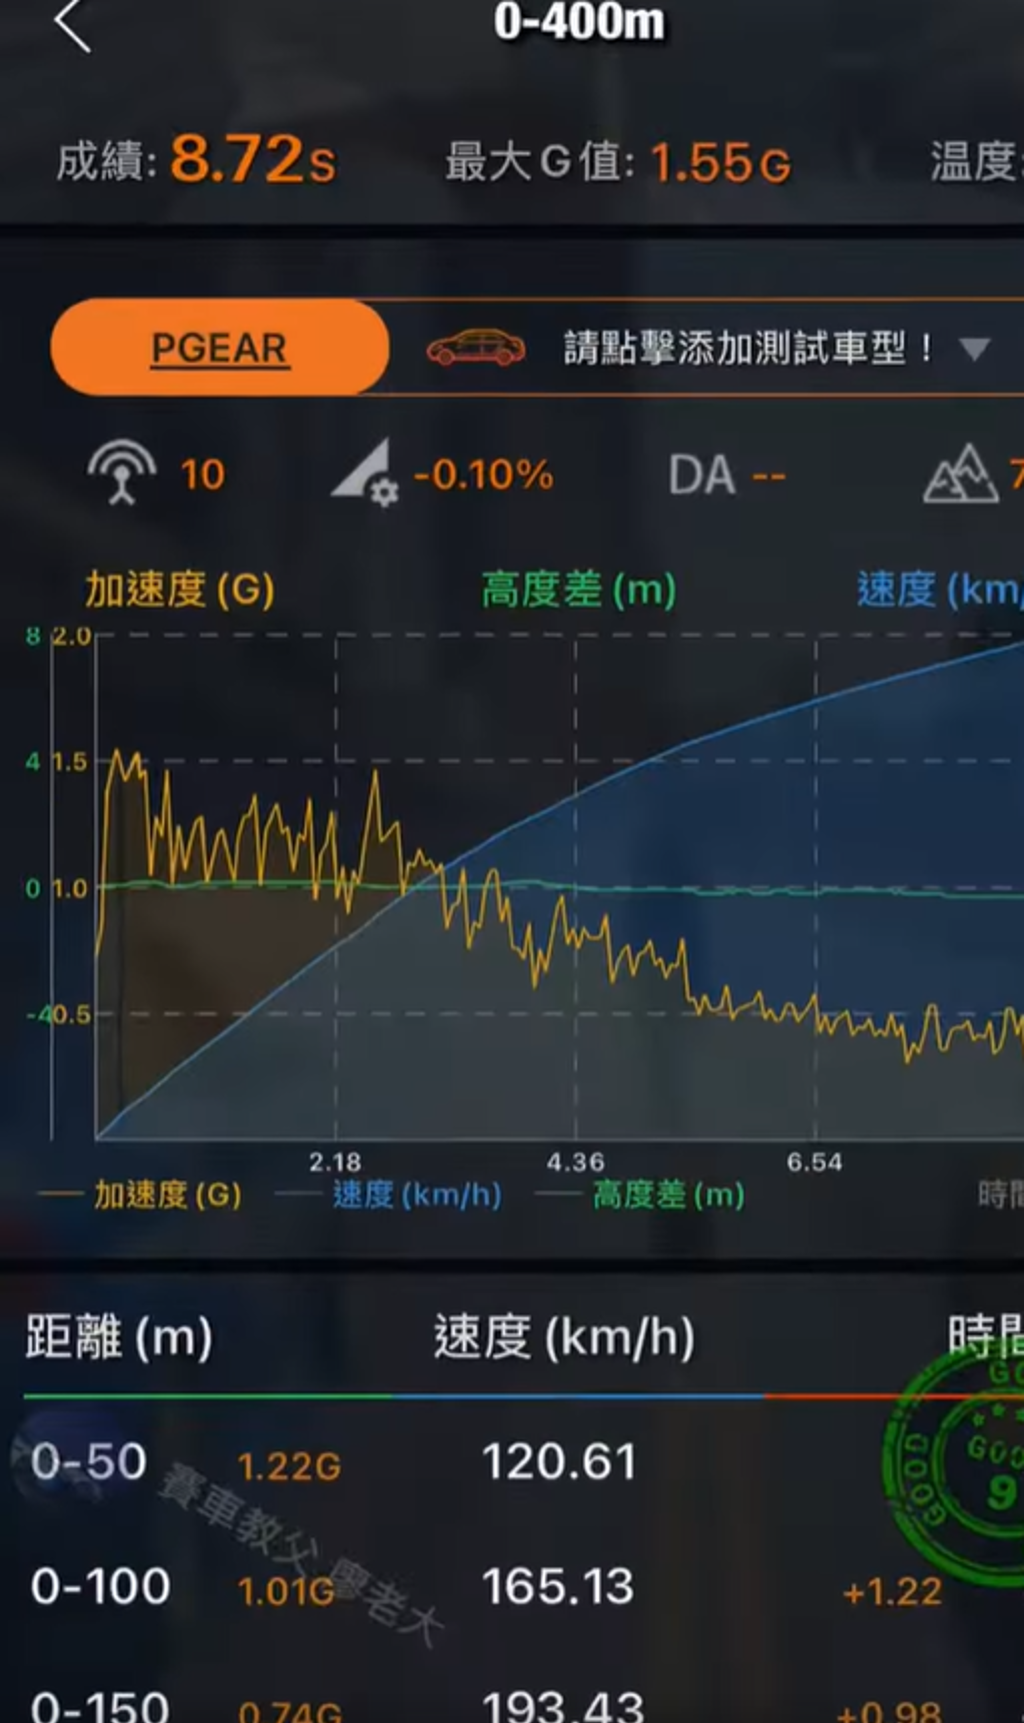 廖老大公開8.72秒成績數據圖 (圖/截自賽車教父-廖老大臉書)